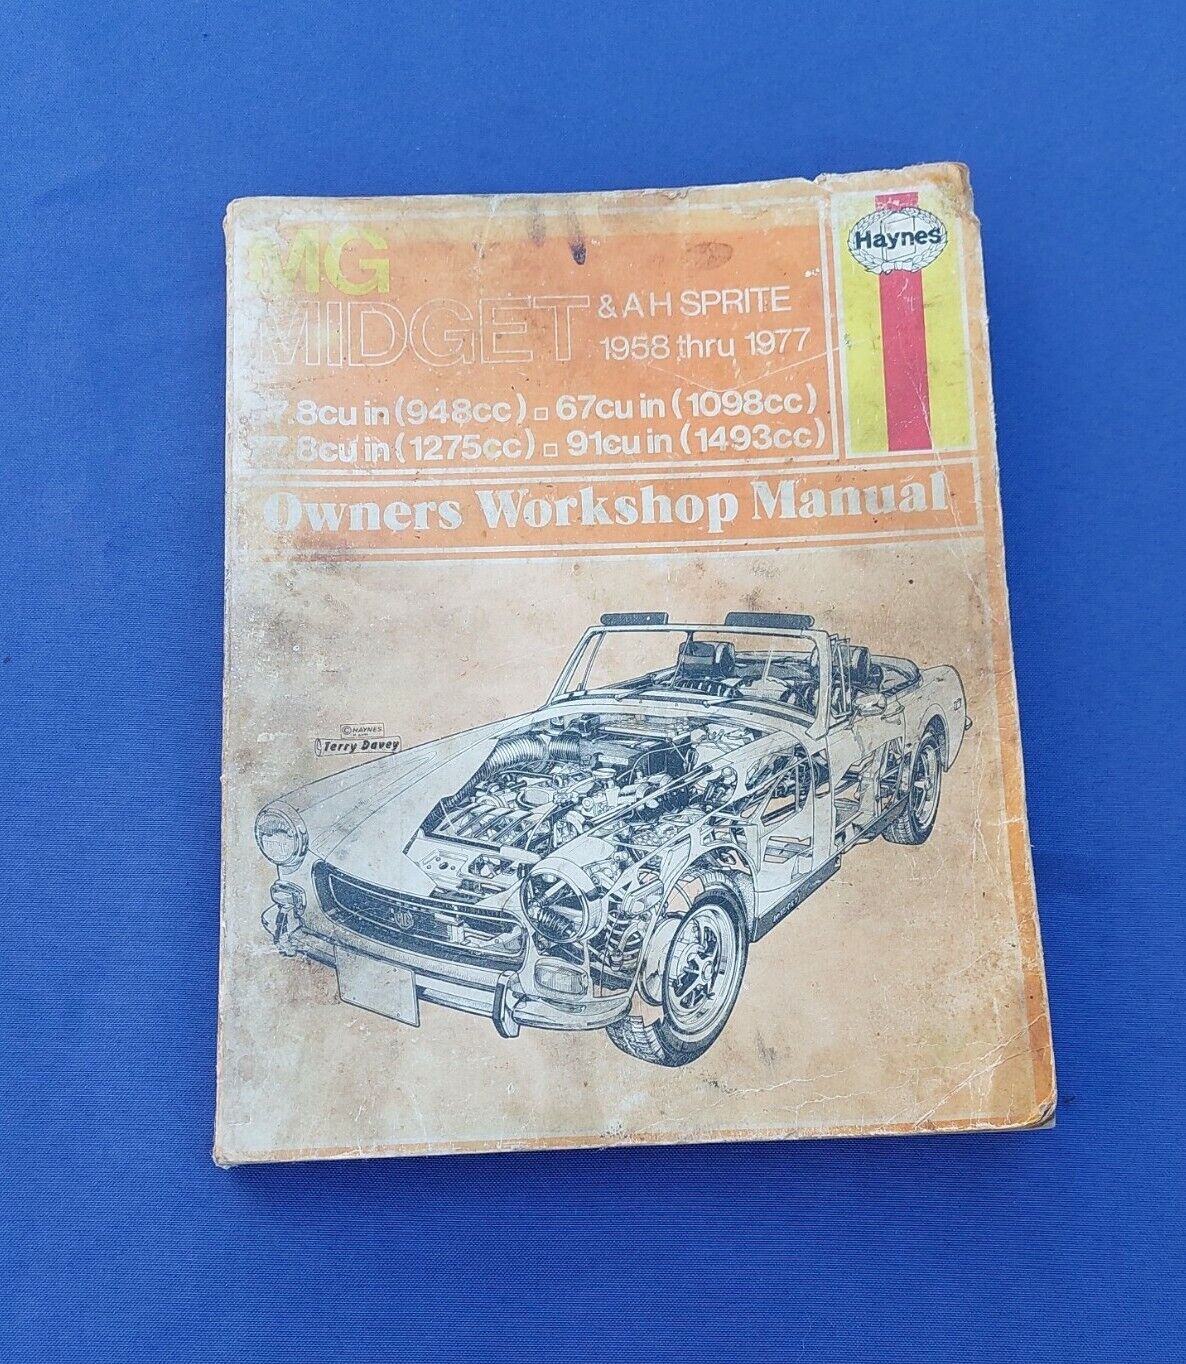 Haynes MG Midget & AH Sprite Owners Workshop Manual 1958 Thru 1977 